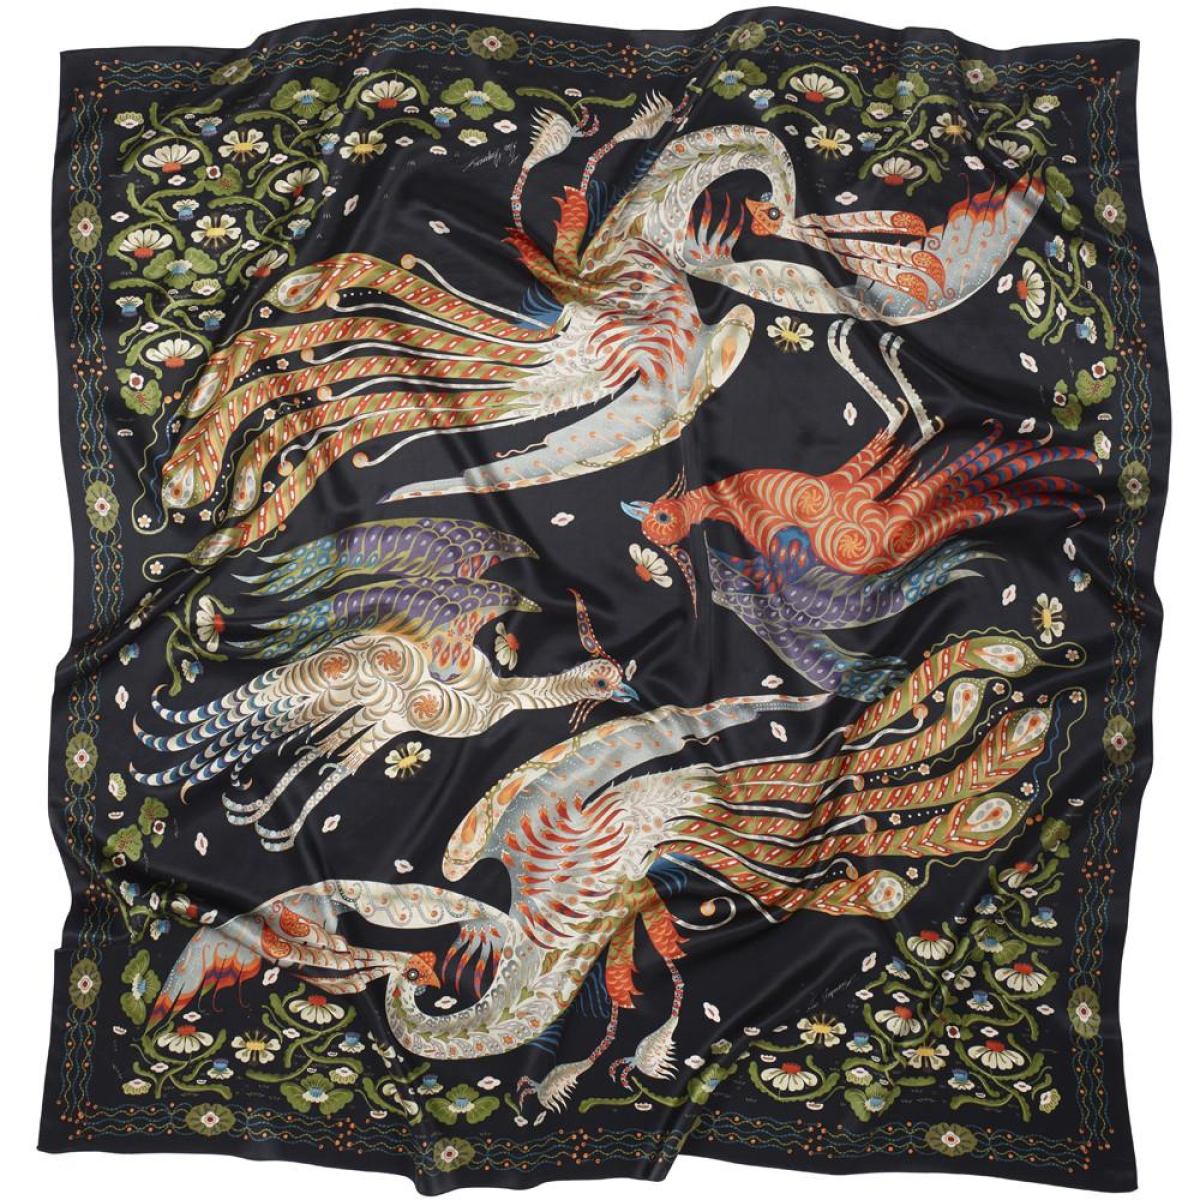 Kunstvoll gestaltetes Halstuch "Firebird" aus reinem Seiden-Satin